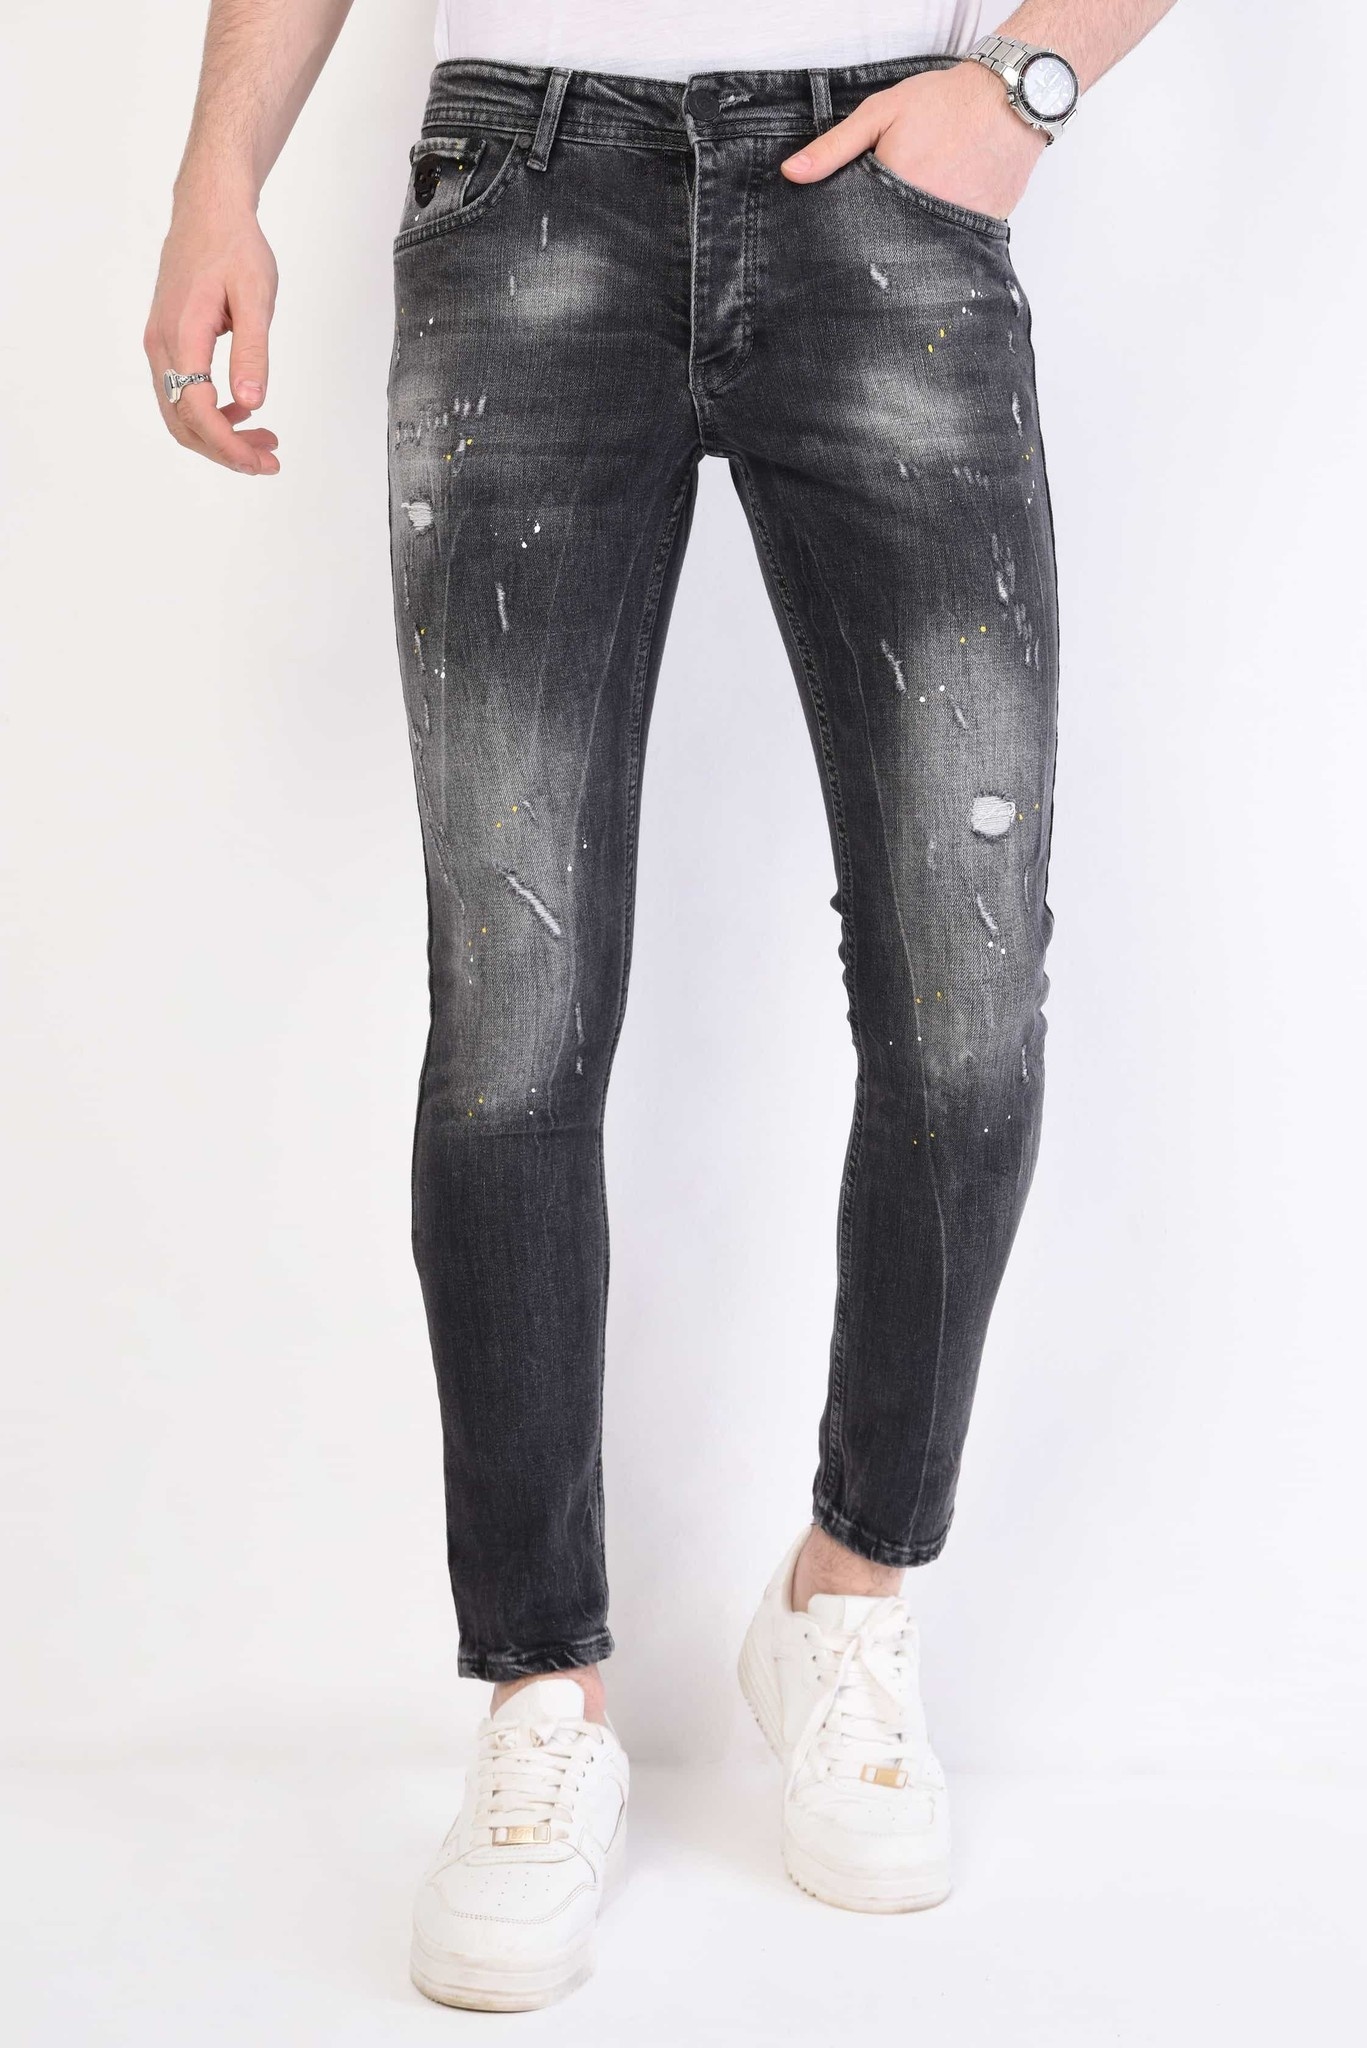 Fervent Productie klem Jeans Heren - Slim Fit - 1055 - Grijs - Local Fanatic